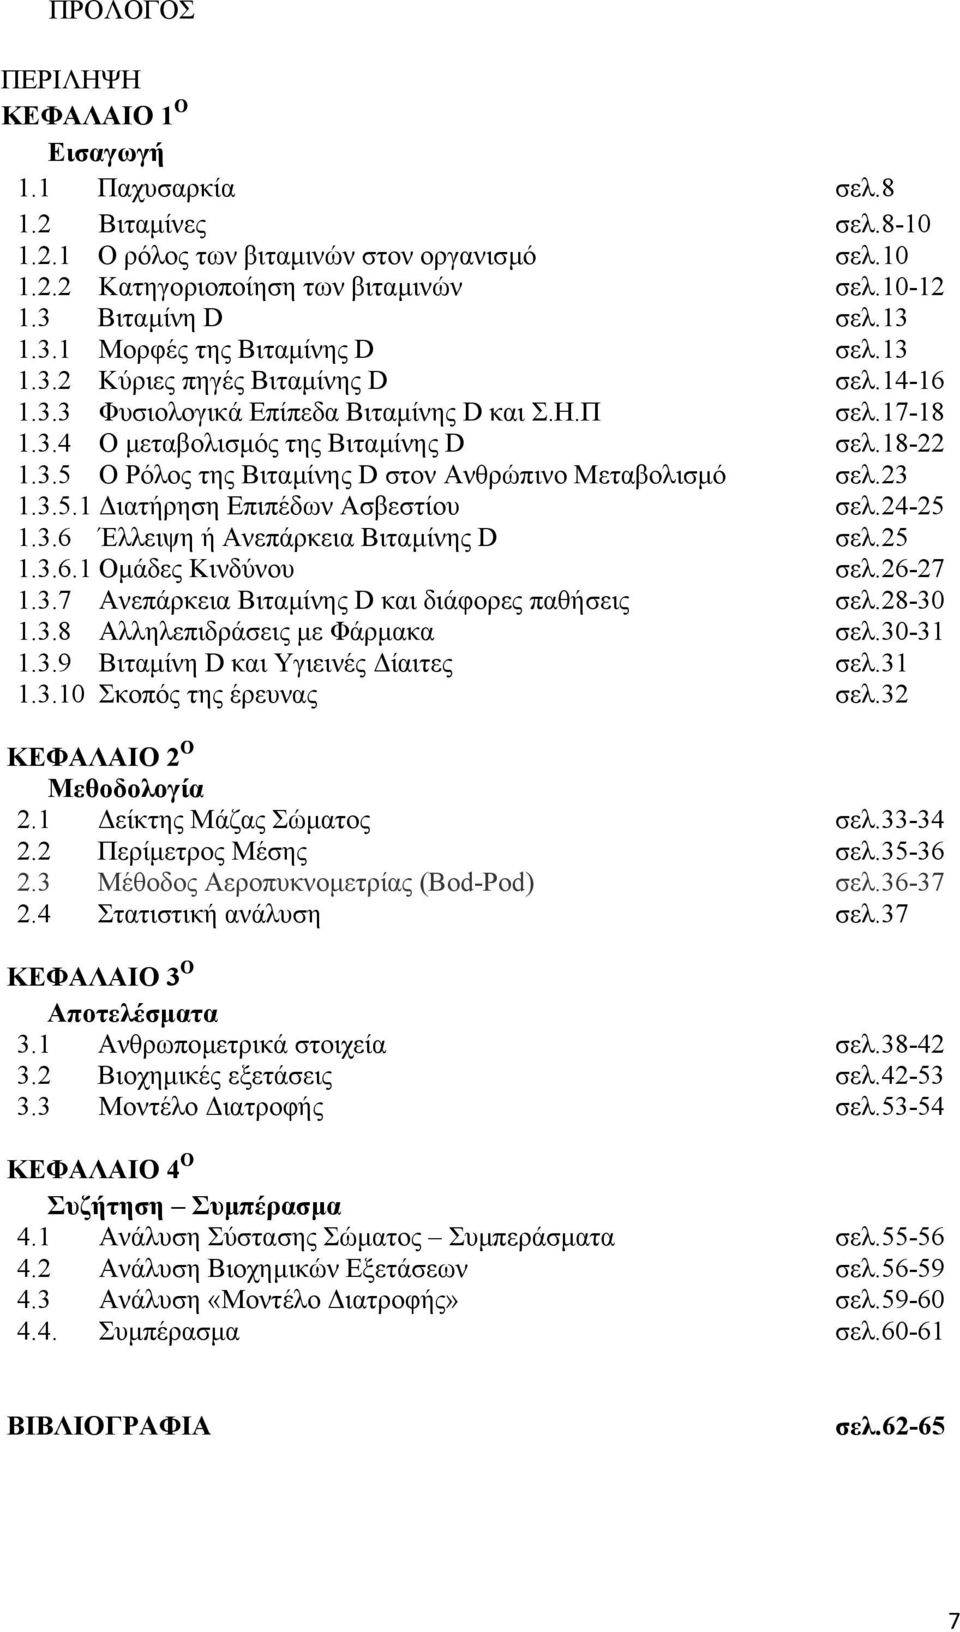 23 1.3.5.1 ιατήρηση Επιπέδων Ασβεστίου σελ.24-25 1.3.6 Έλλειψη ή Ανεπάρκεια Βιταµίνης D σελ.25 1.3.6.1 Οµάδες Κινδύνου σελ.26-27 1.3.7 Ανεπάρκεια Βιταµίνης D και διάφορες παθήσεις σελ.28-30 1.3.8 Αλληλεπιδράσεις µε Φάρµακα σελ.